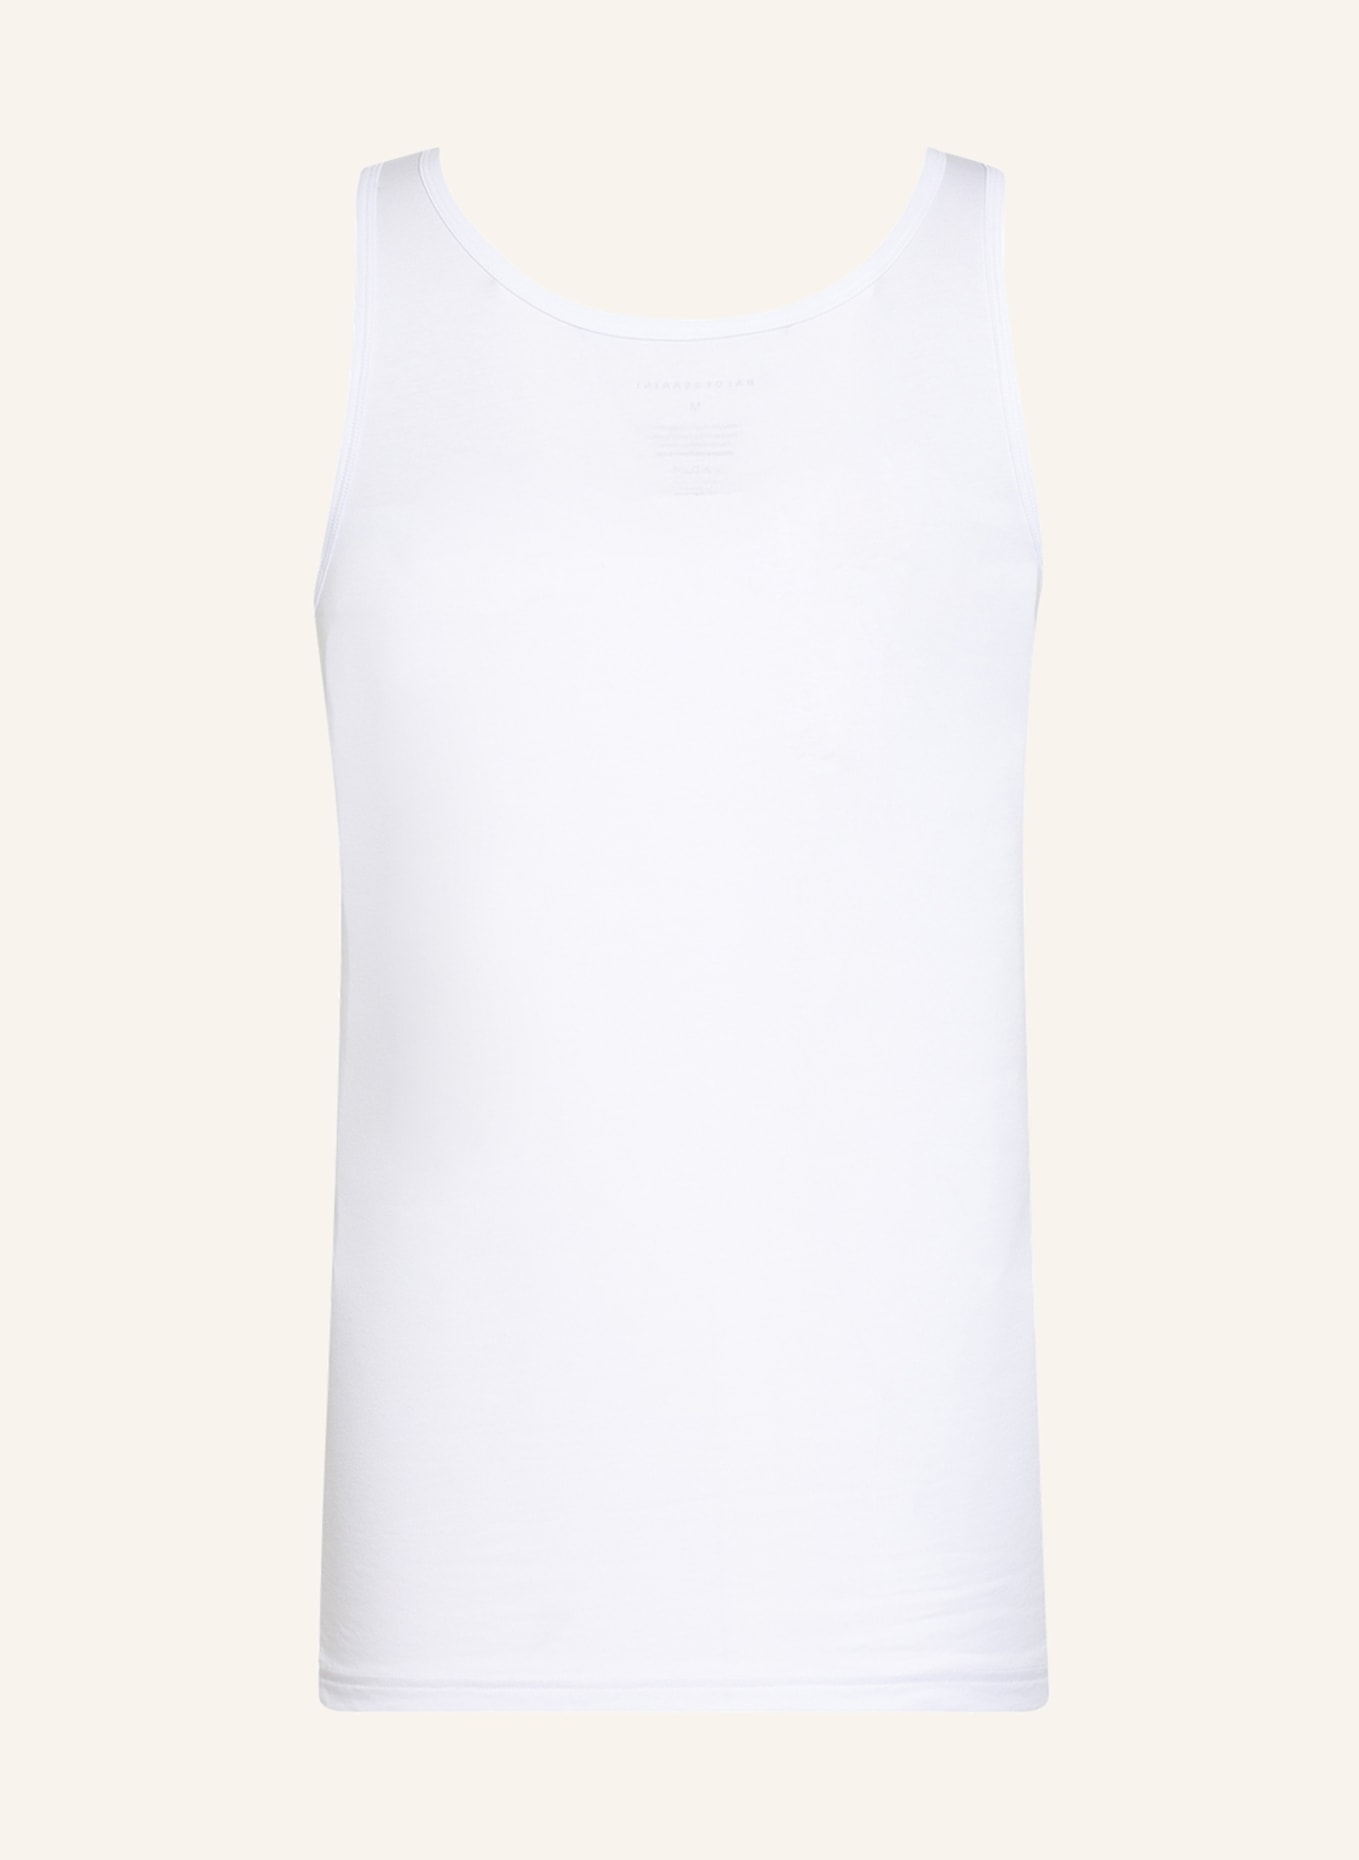 BALDESSARINI 2-pack Undershirts , Color: WHITE (Image 2)